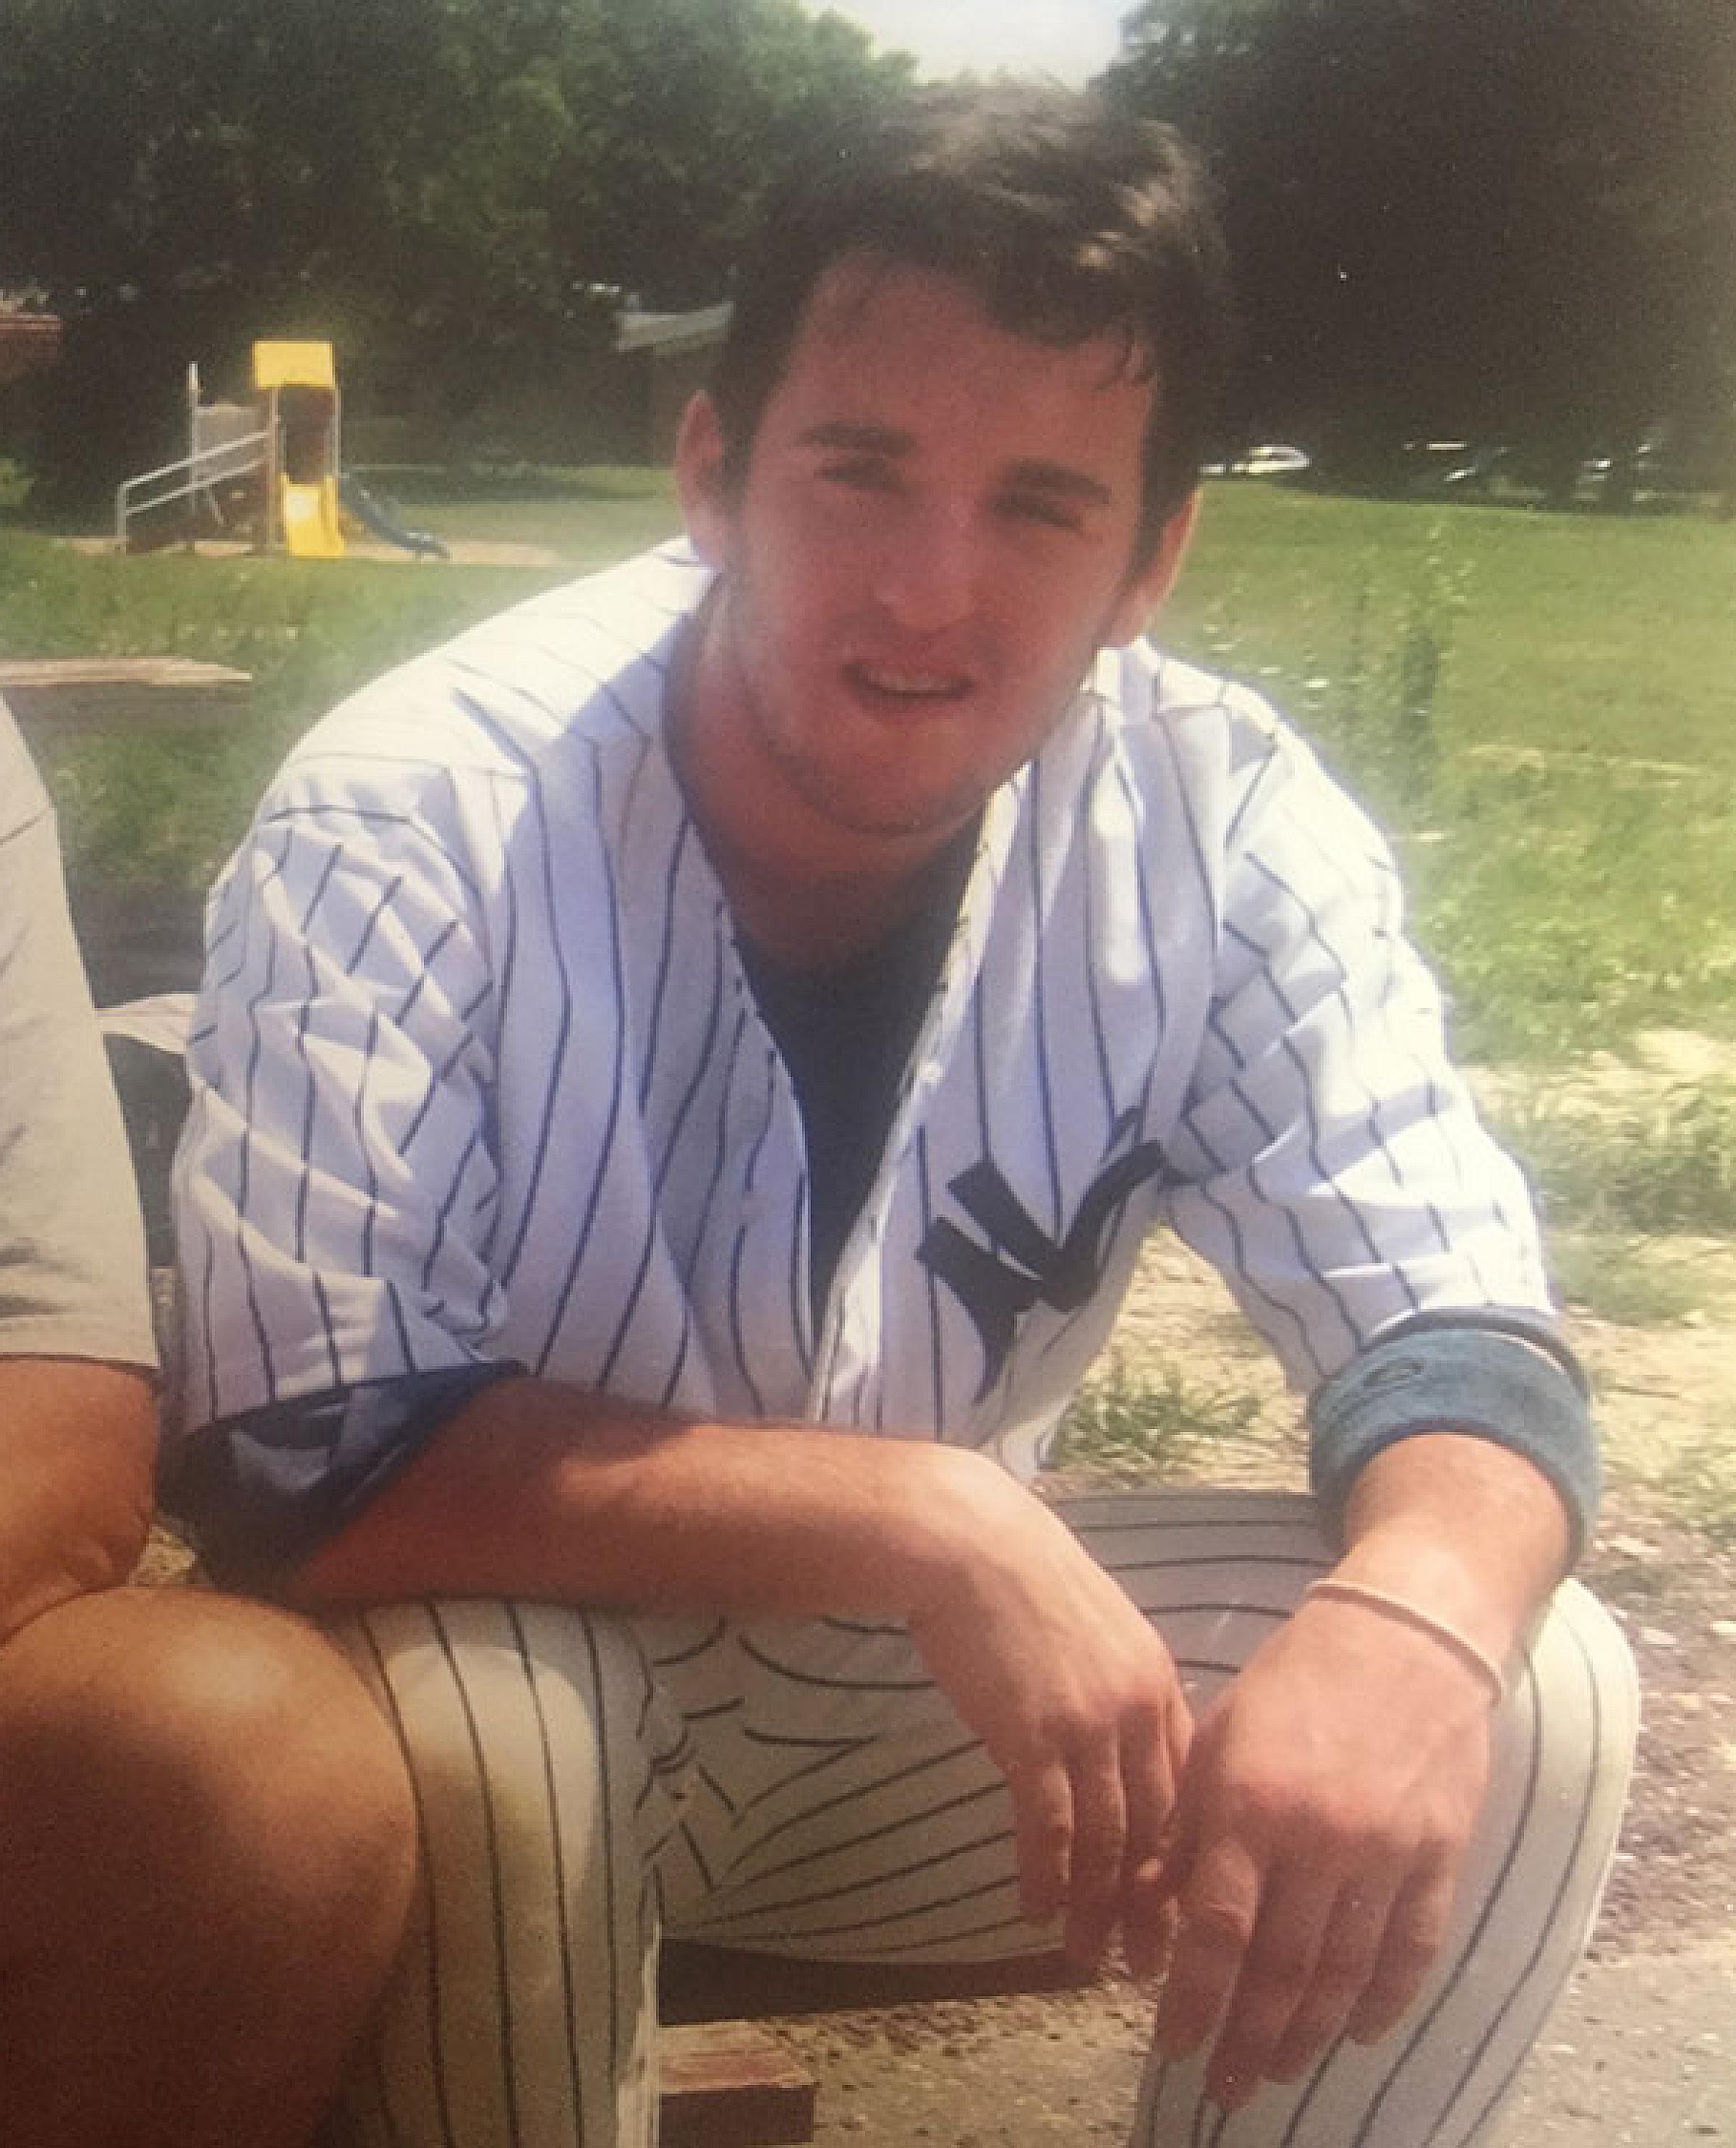 Adam Singer Sitting Outside in Baseball Uniform